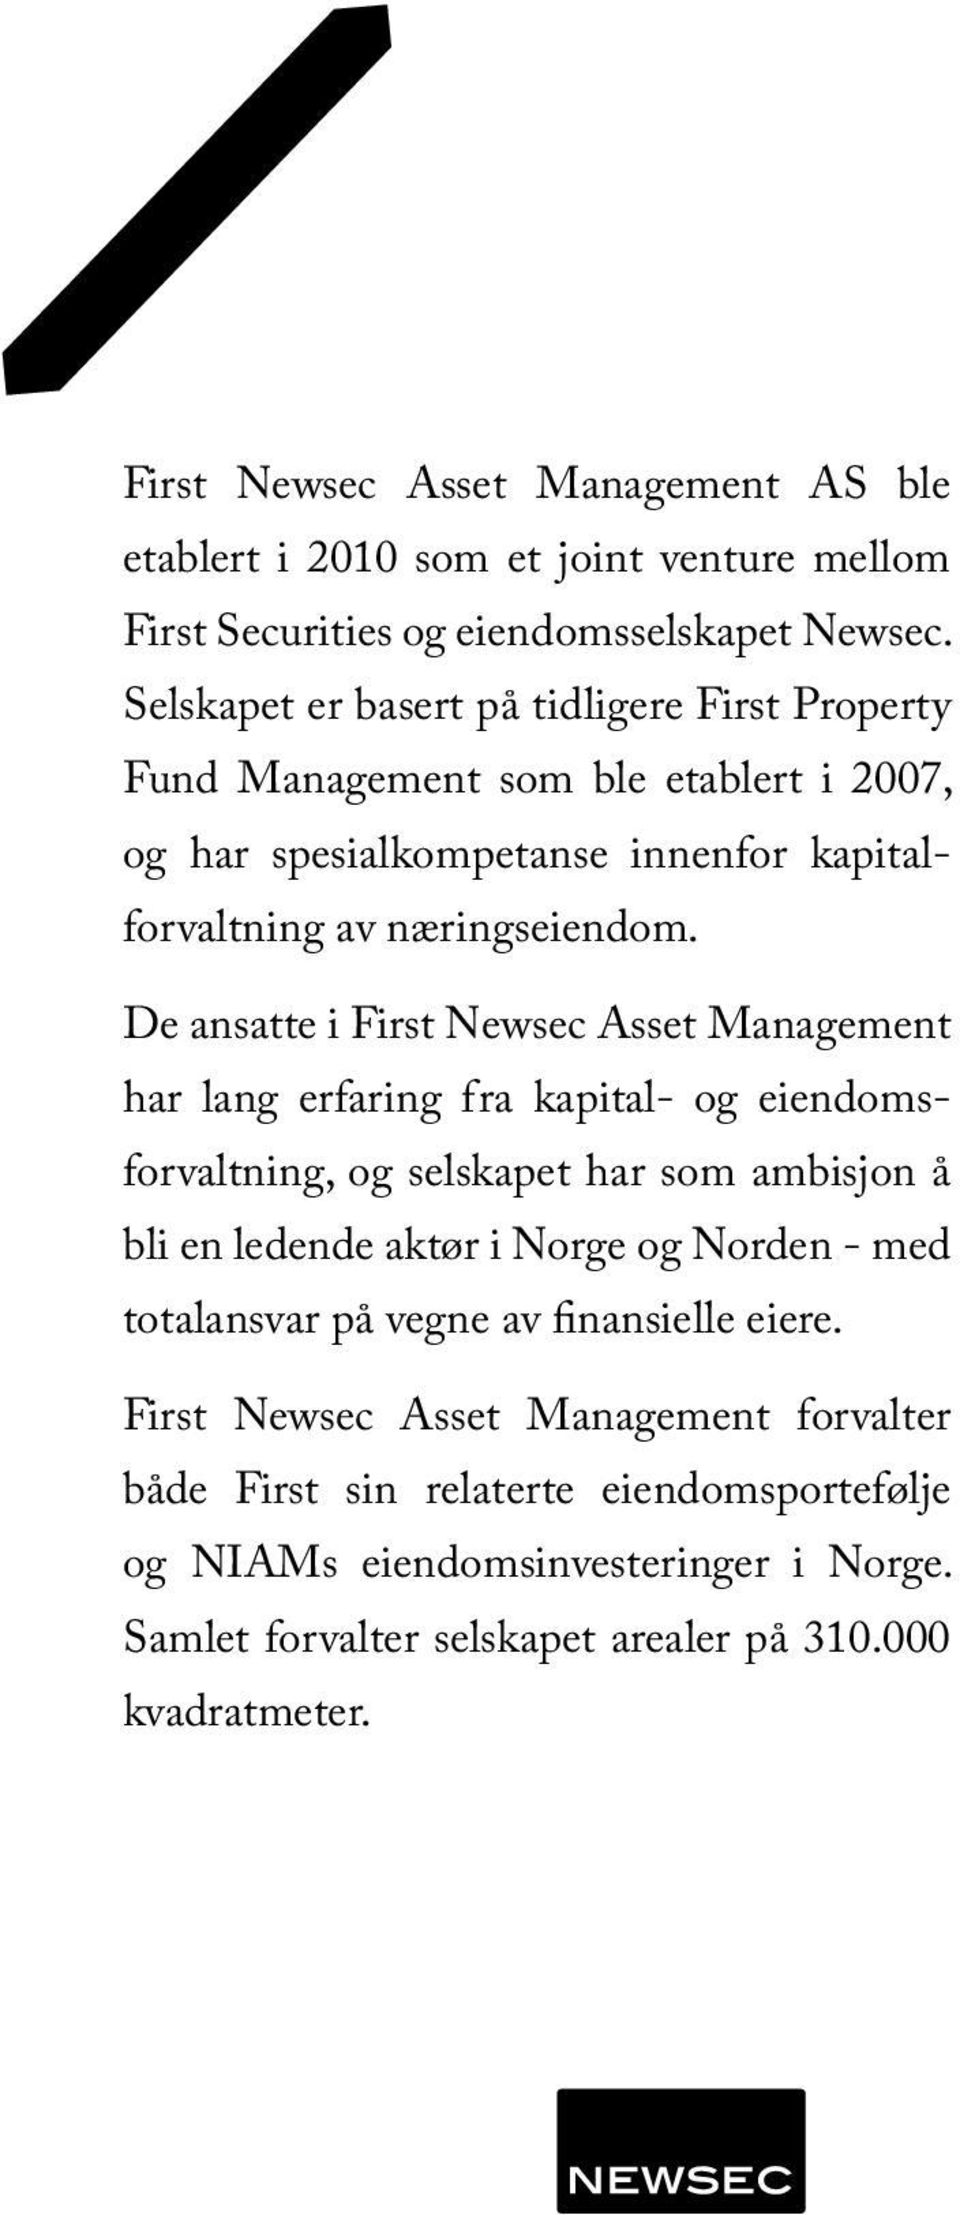 De ansatte i First Newsec Asset Management har lang erfaring fra kapital- og eiendomsforvaltning, og selskapet har som ambisjon å bli en ledende aktør i Norge og Norden -